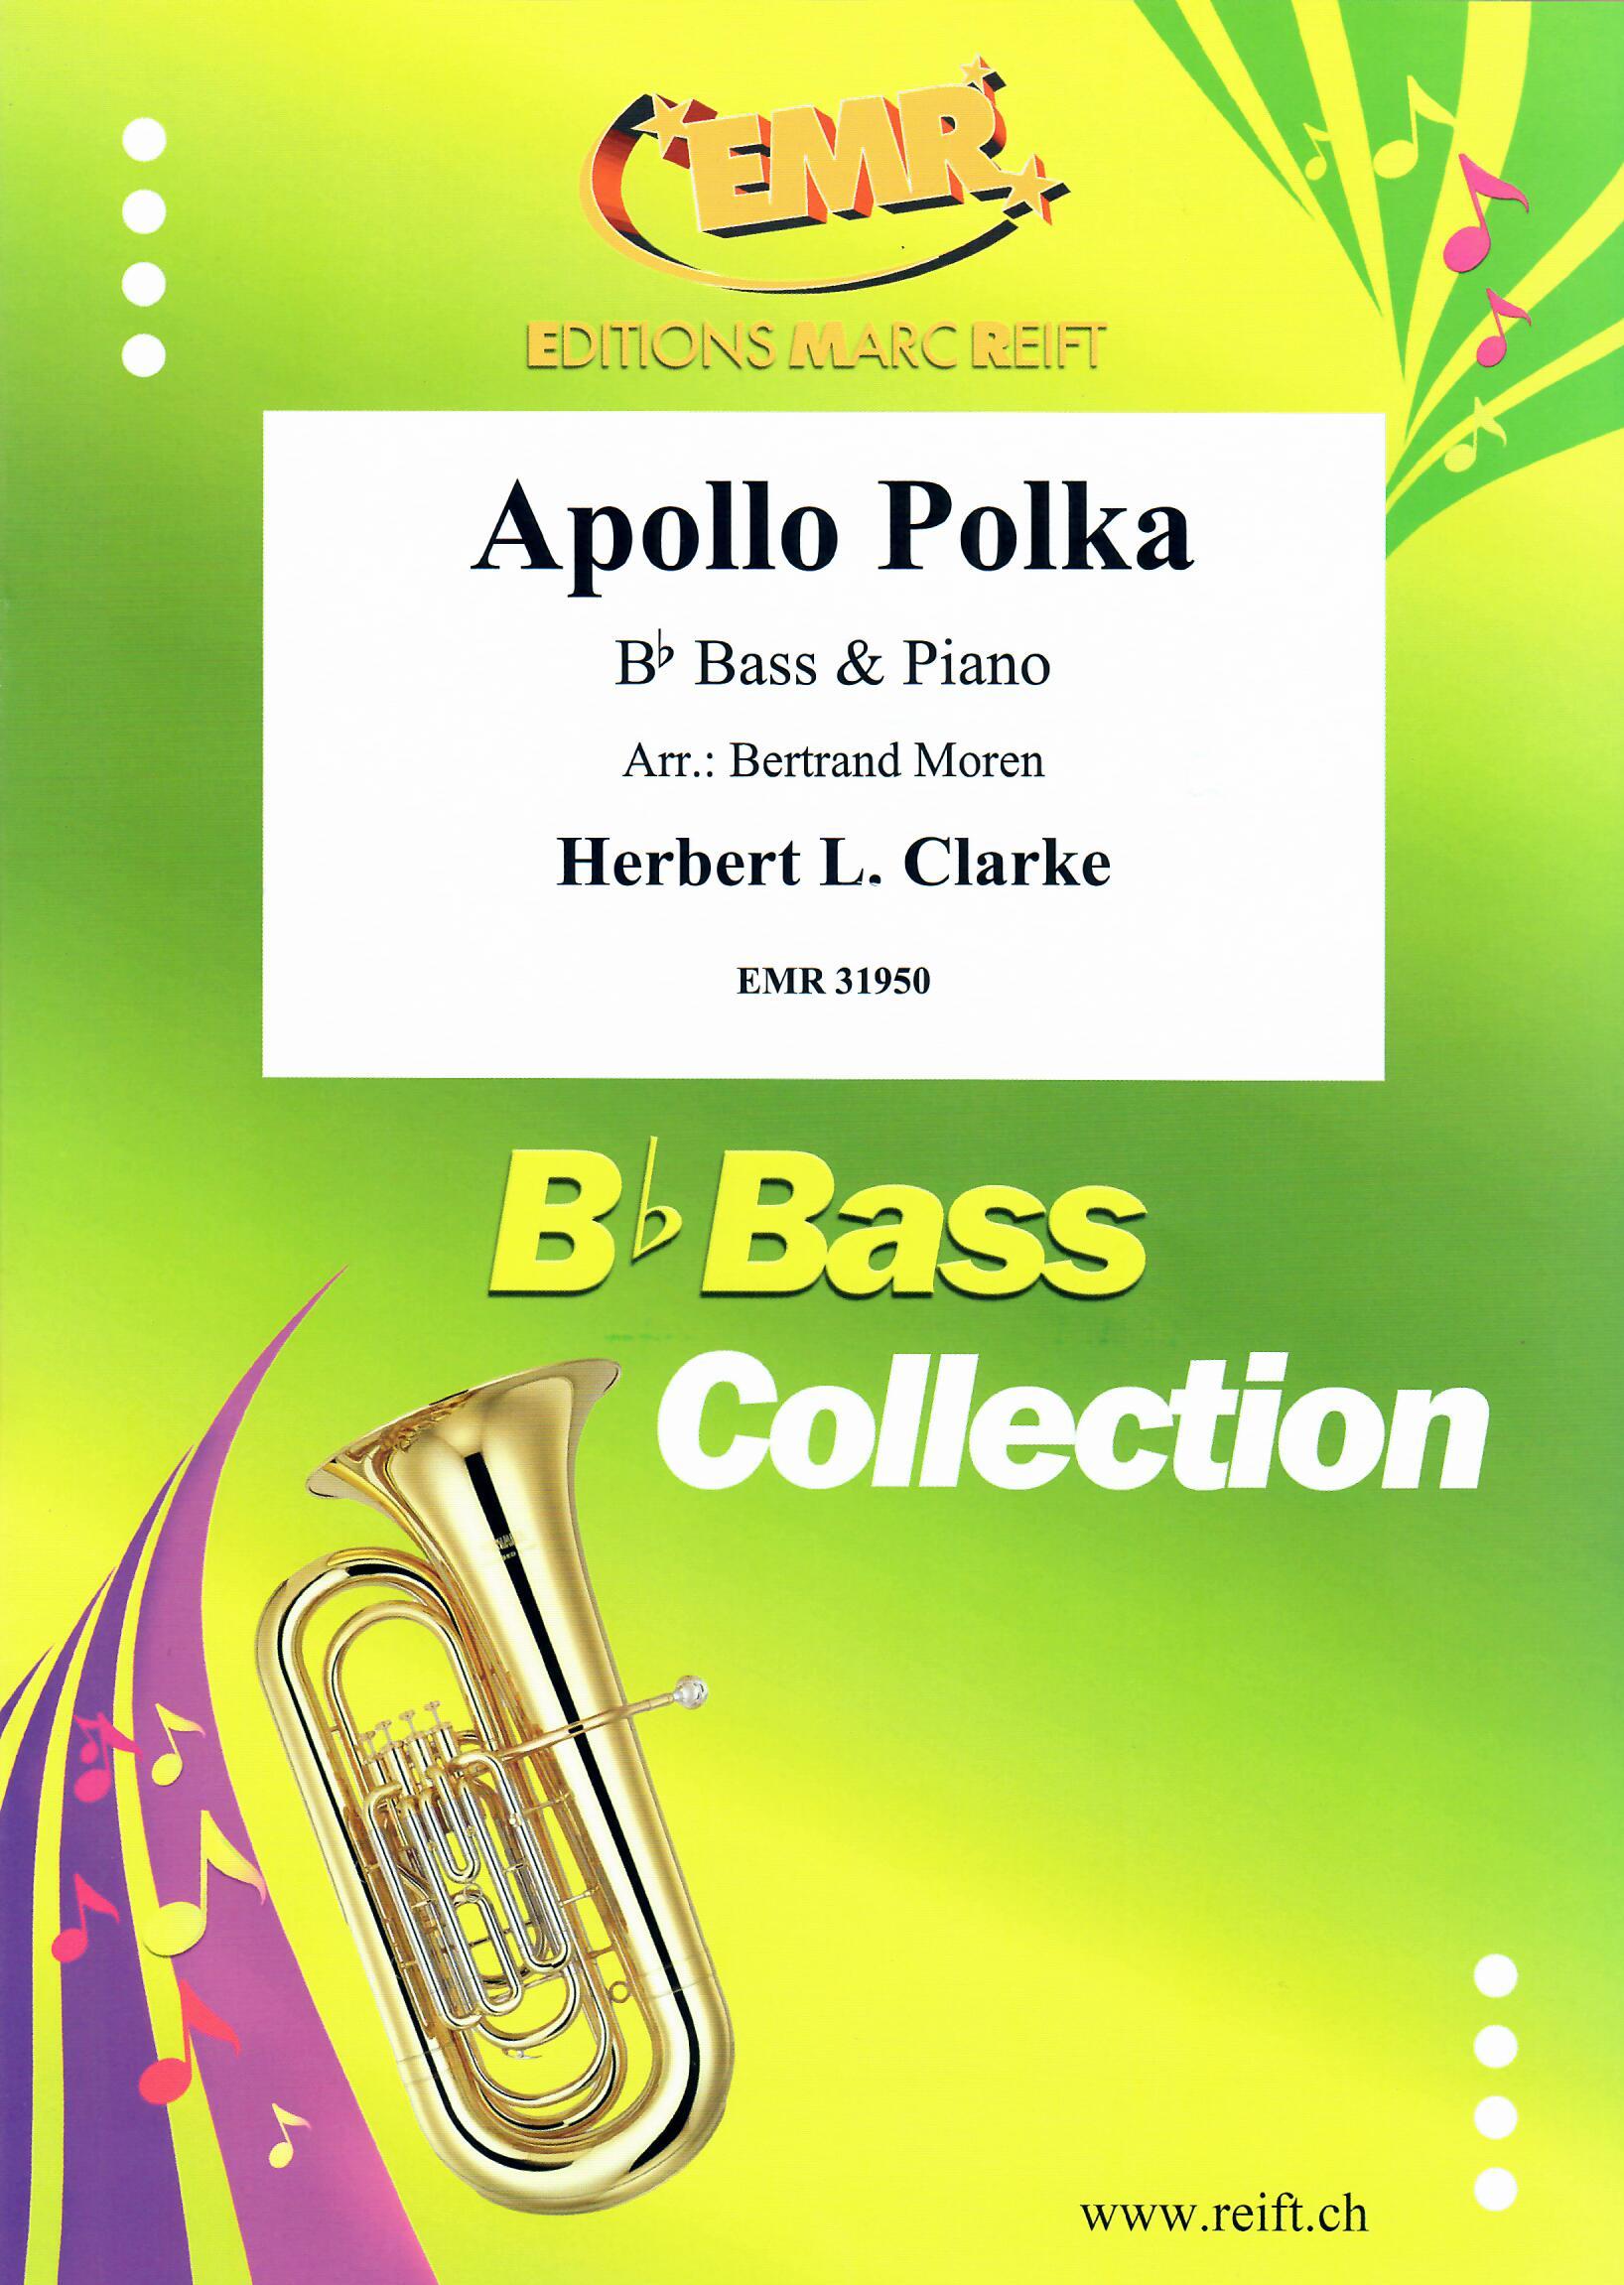 APOLLO POLKA, SOLOS - E♭. Bass